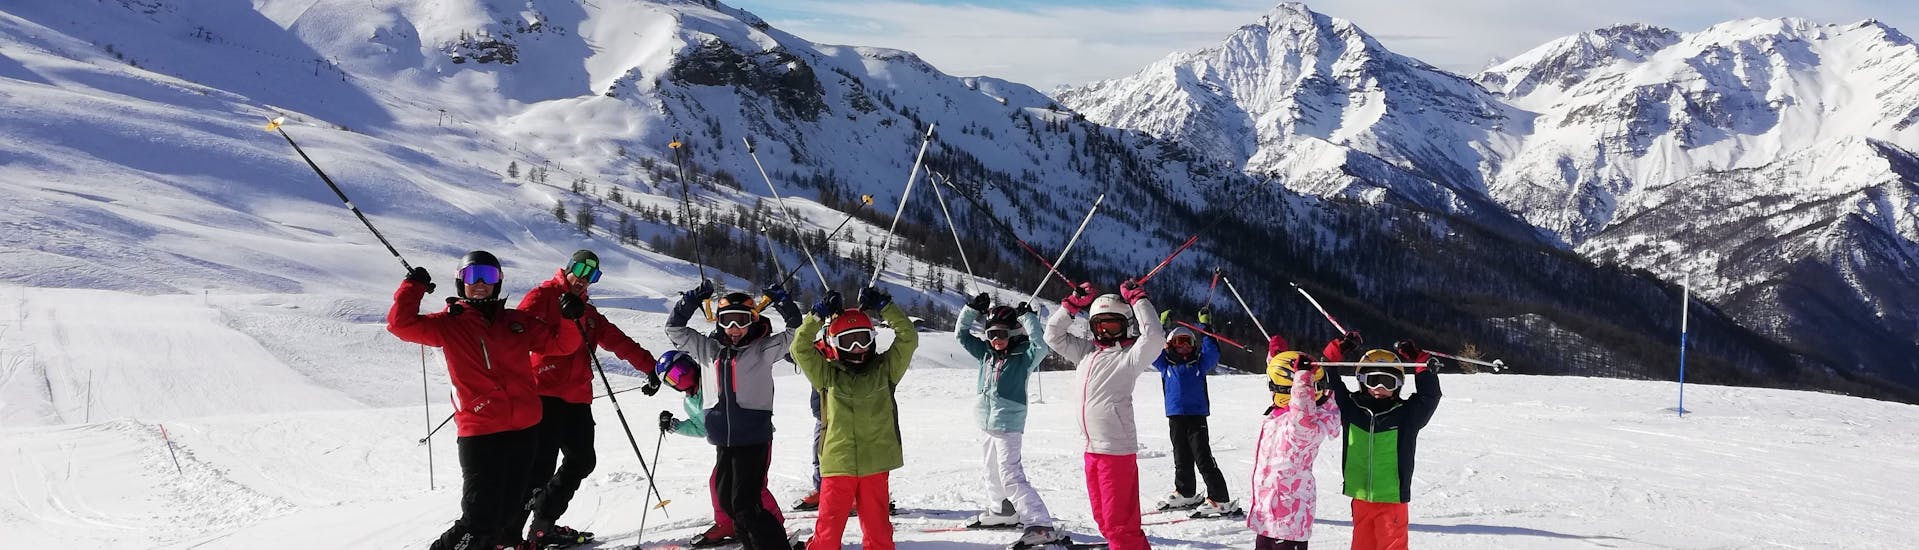 Bambini felici a Pragelato dopo una delle lezioni di sci per bambini (5-15 anni) per sciatori esperti.